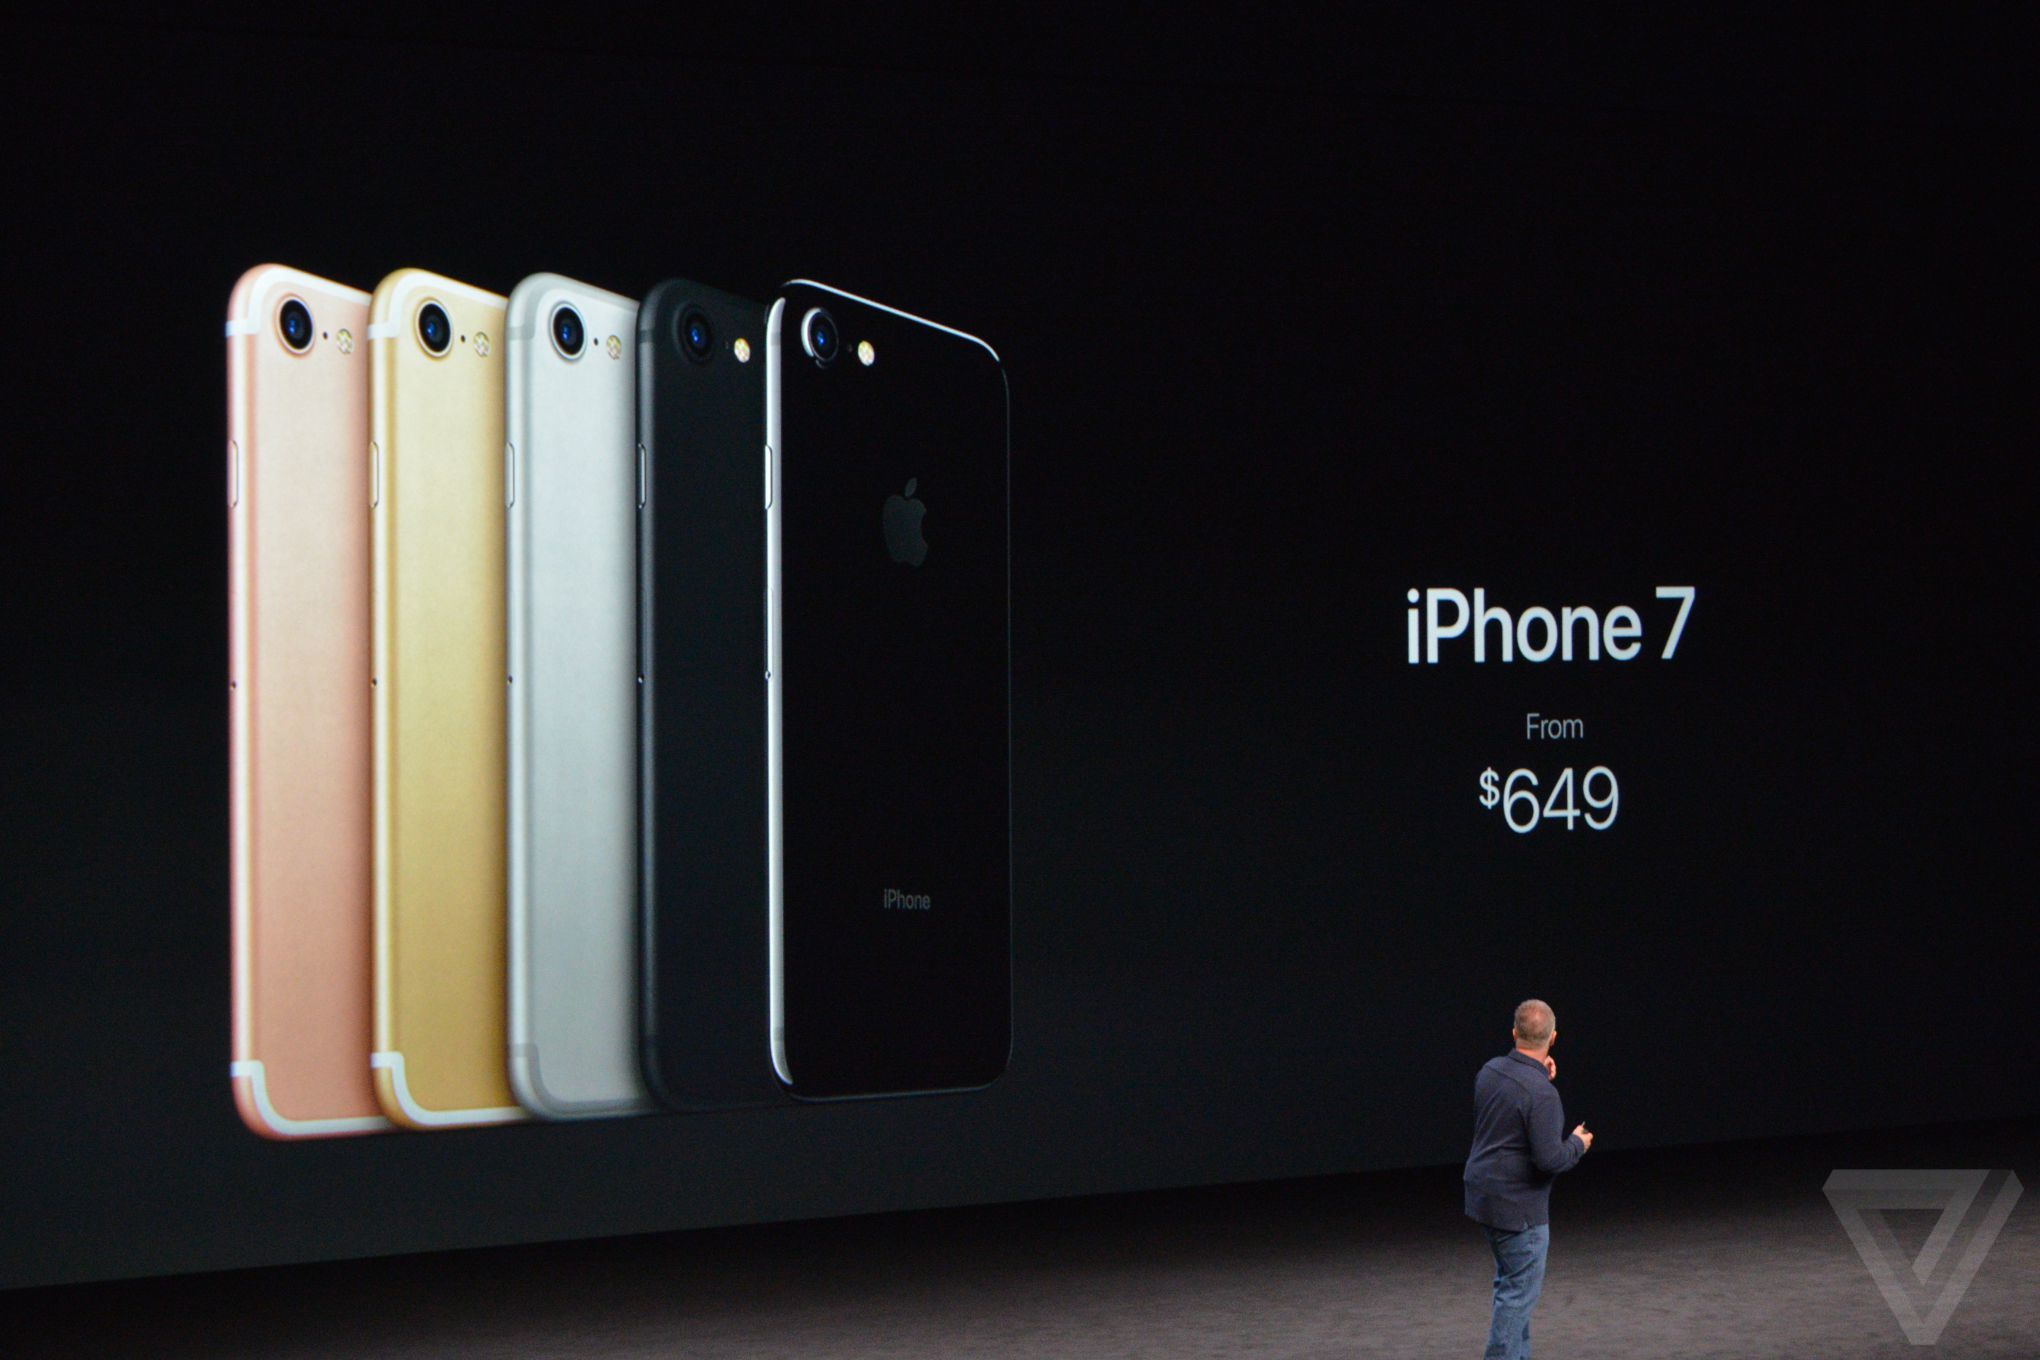  iPhone 7-ի և iPhone 7 Plus-ի կարևոր առանձնահատկությունները.լուսանկարներ